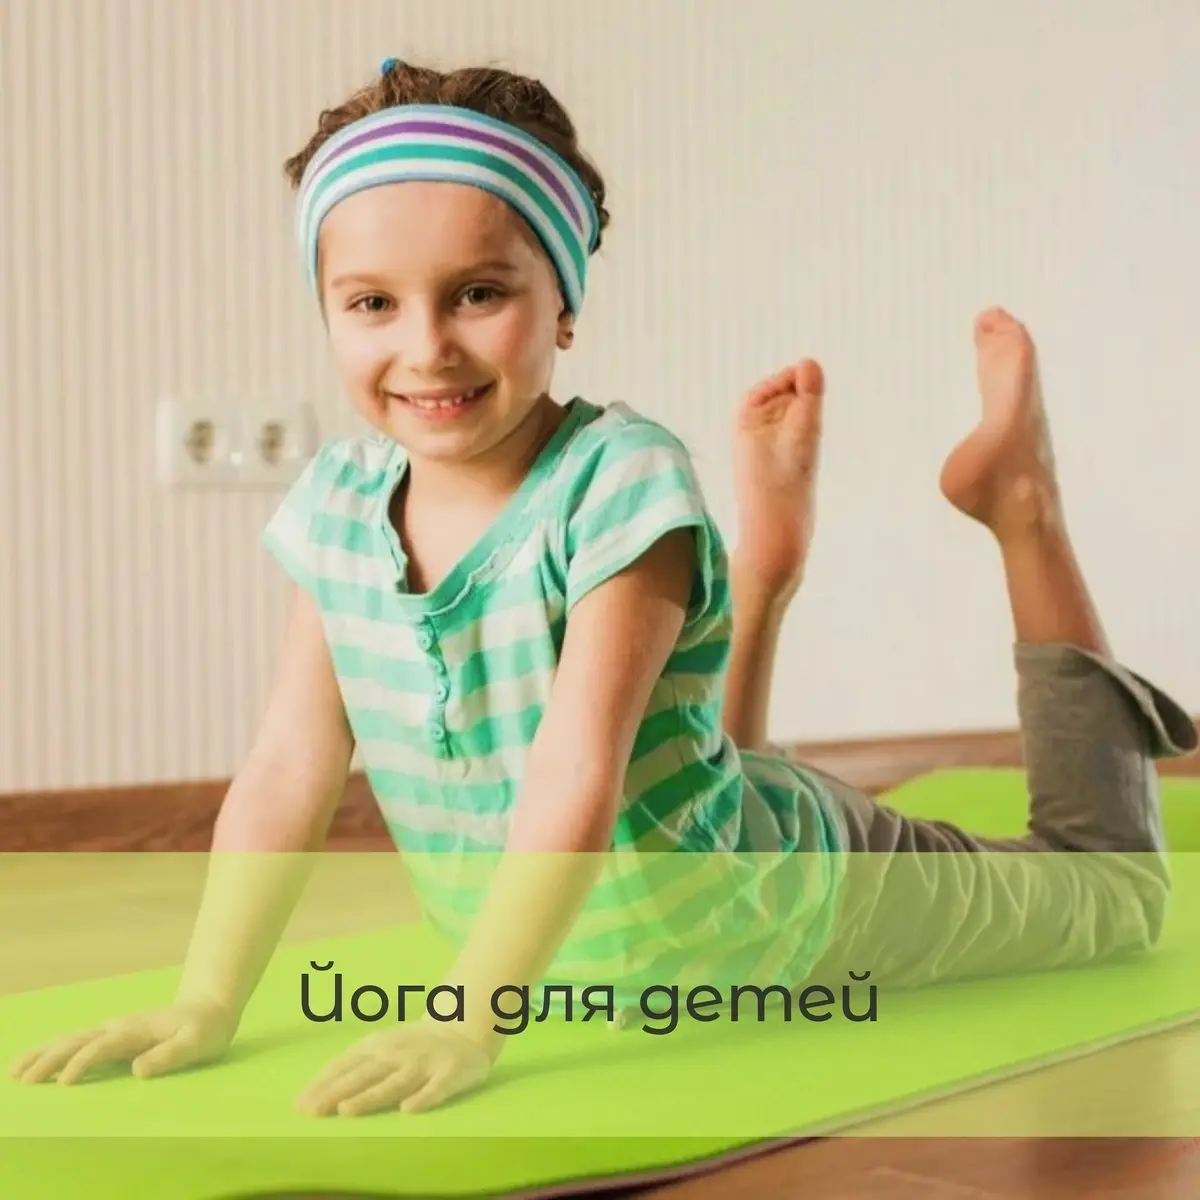 Детский фитнес в новом формате, долой скучные занятия!
Занятия на гибкость, игровые переменки и сказкотерапия